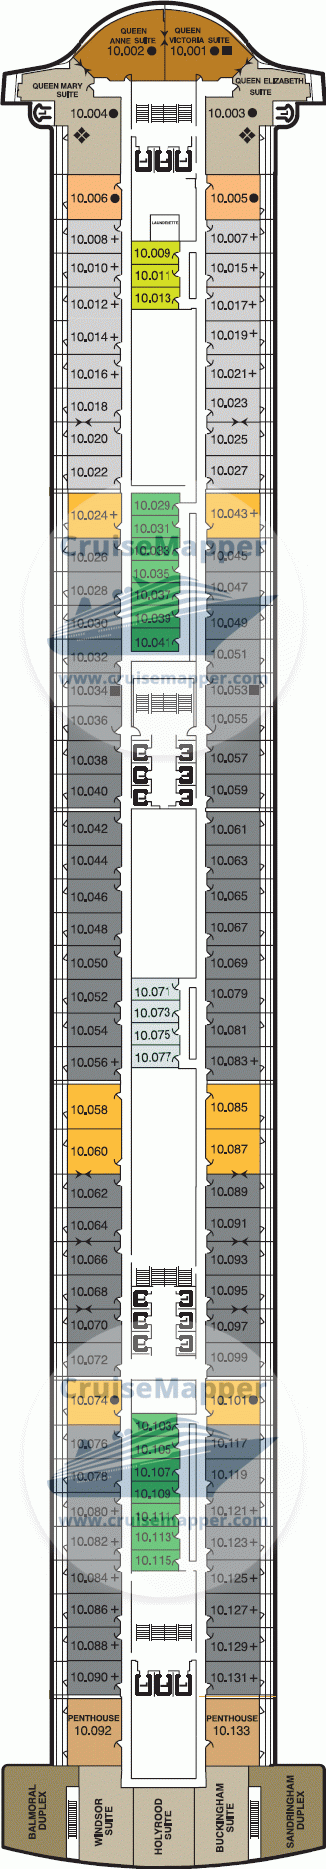 Queen Mary 2 Deck 10 - Suites